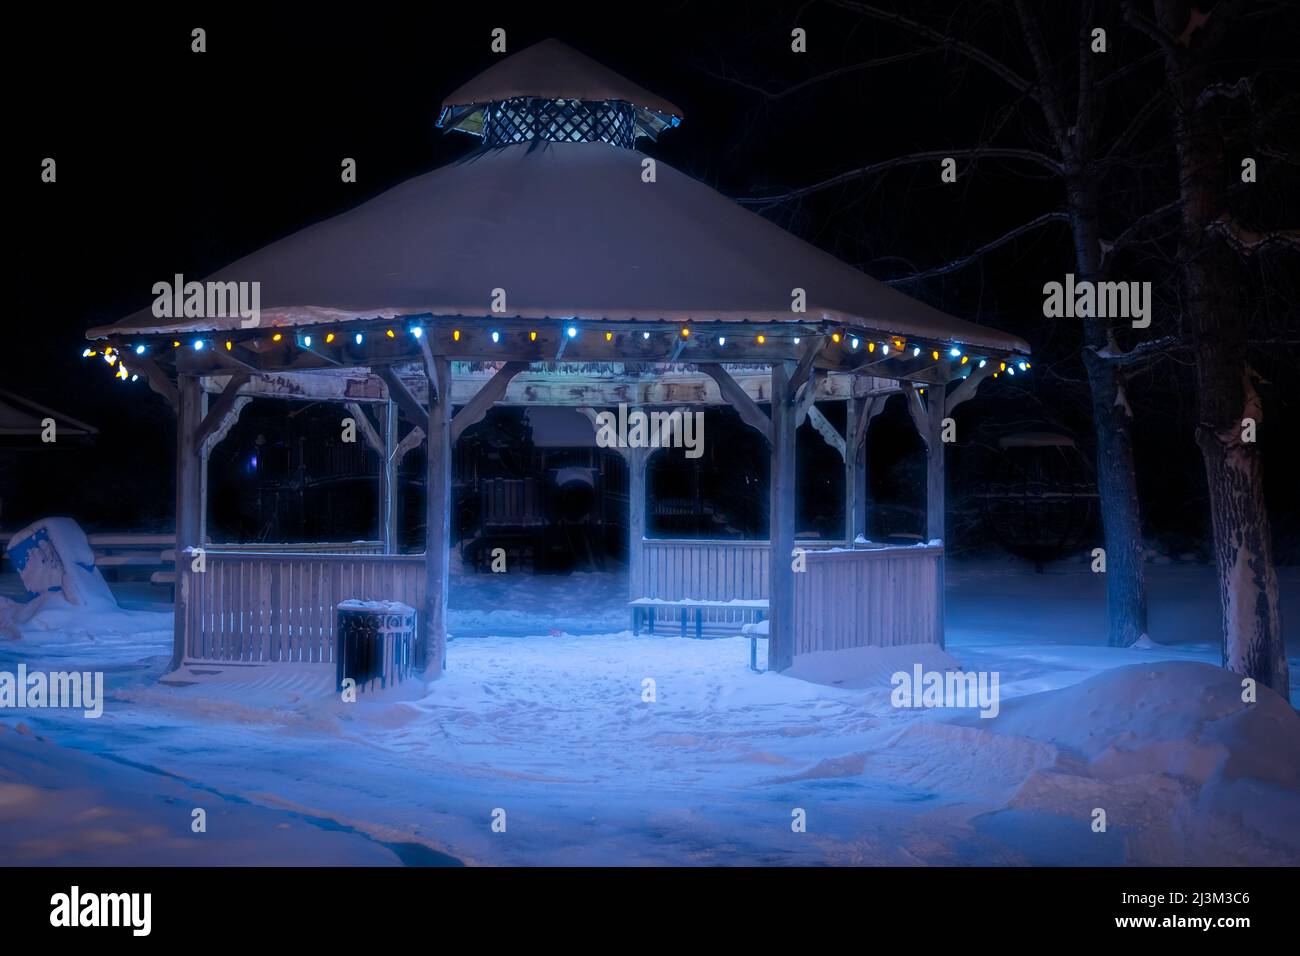 Les lumières de Noël illuminent un belvédère la nuit dans un parc enneigé en hiver; Stony Plain, Alberta, Canada Banque D'Images